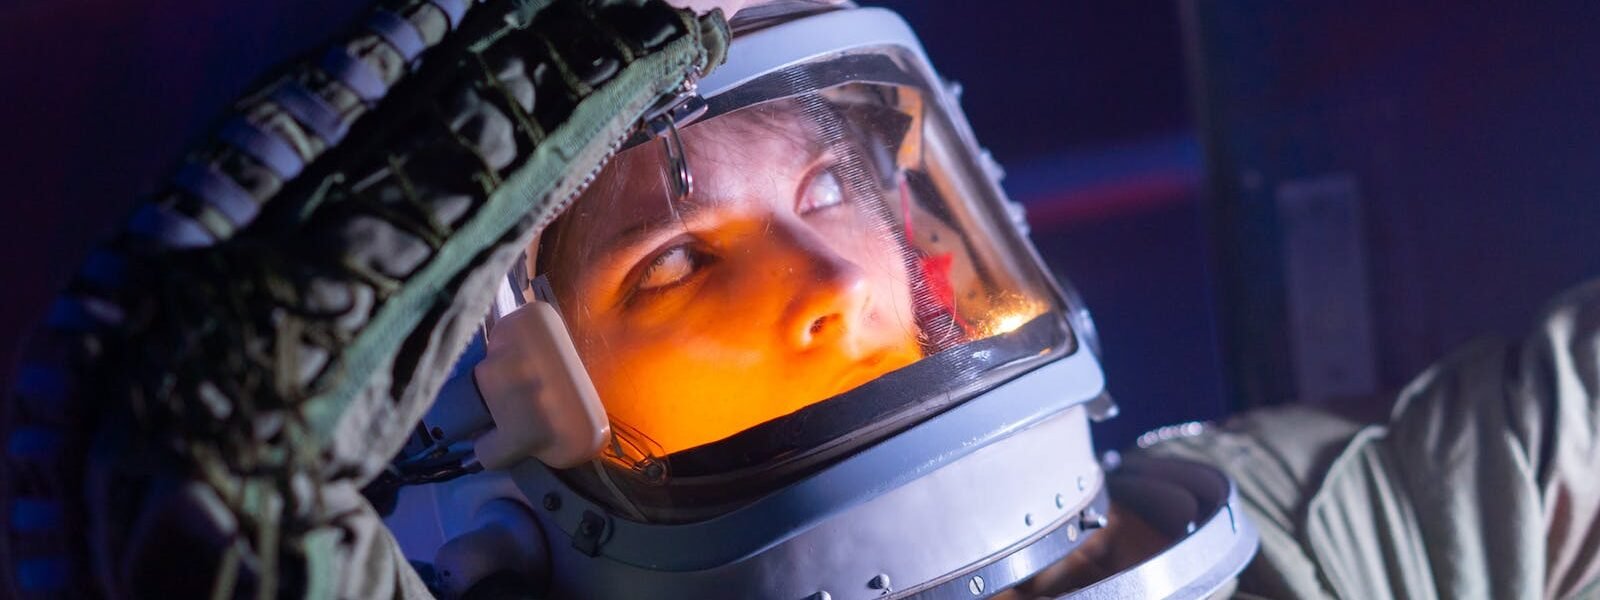 Woman In Spacesuit Looking Surprised